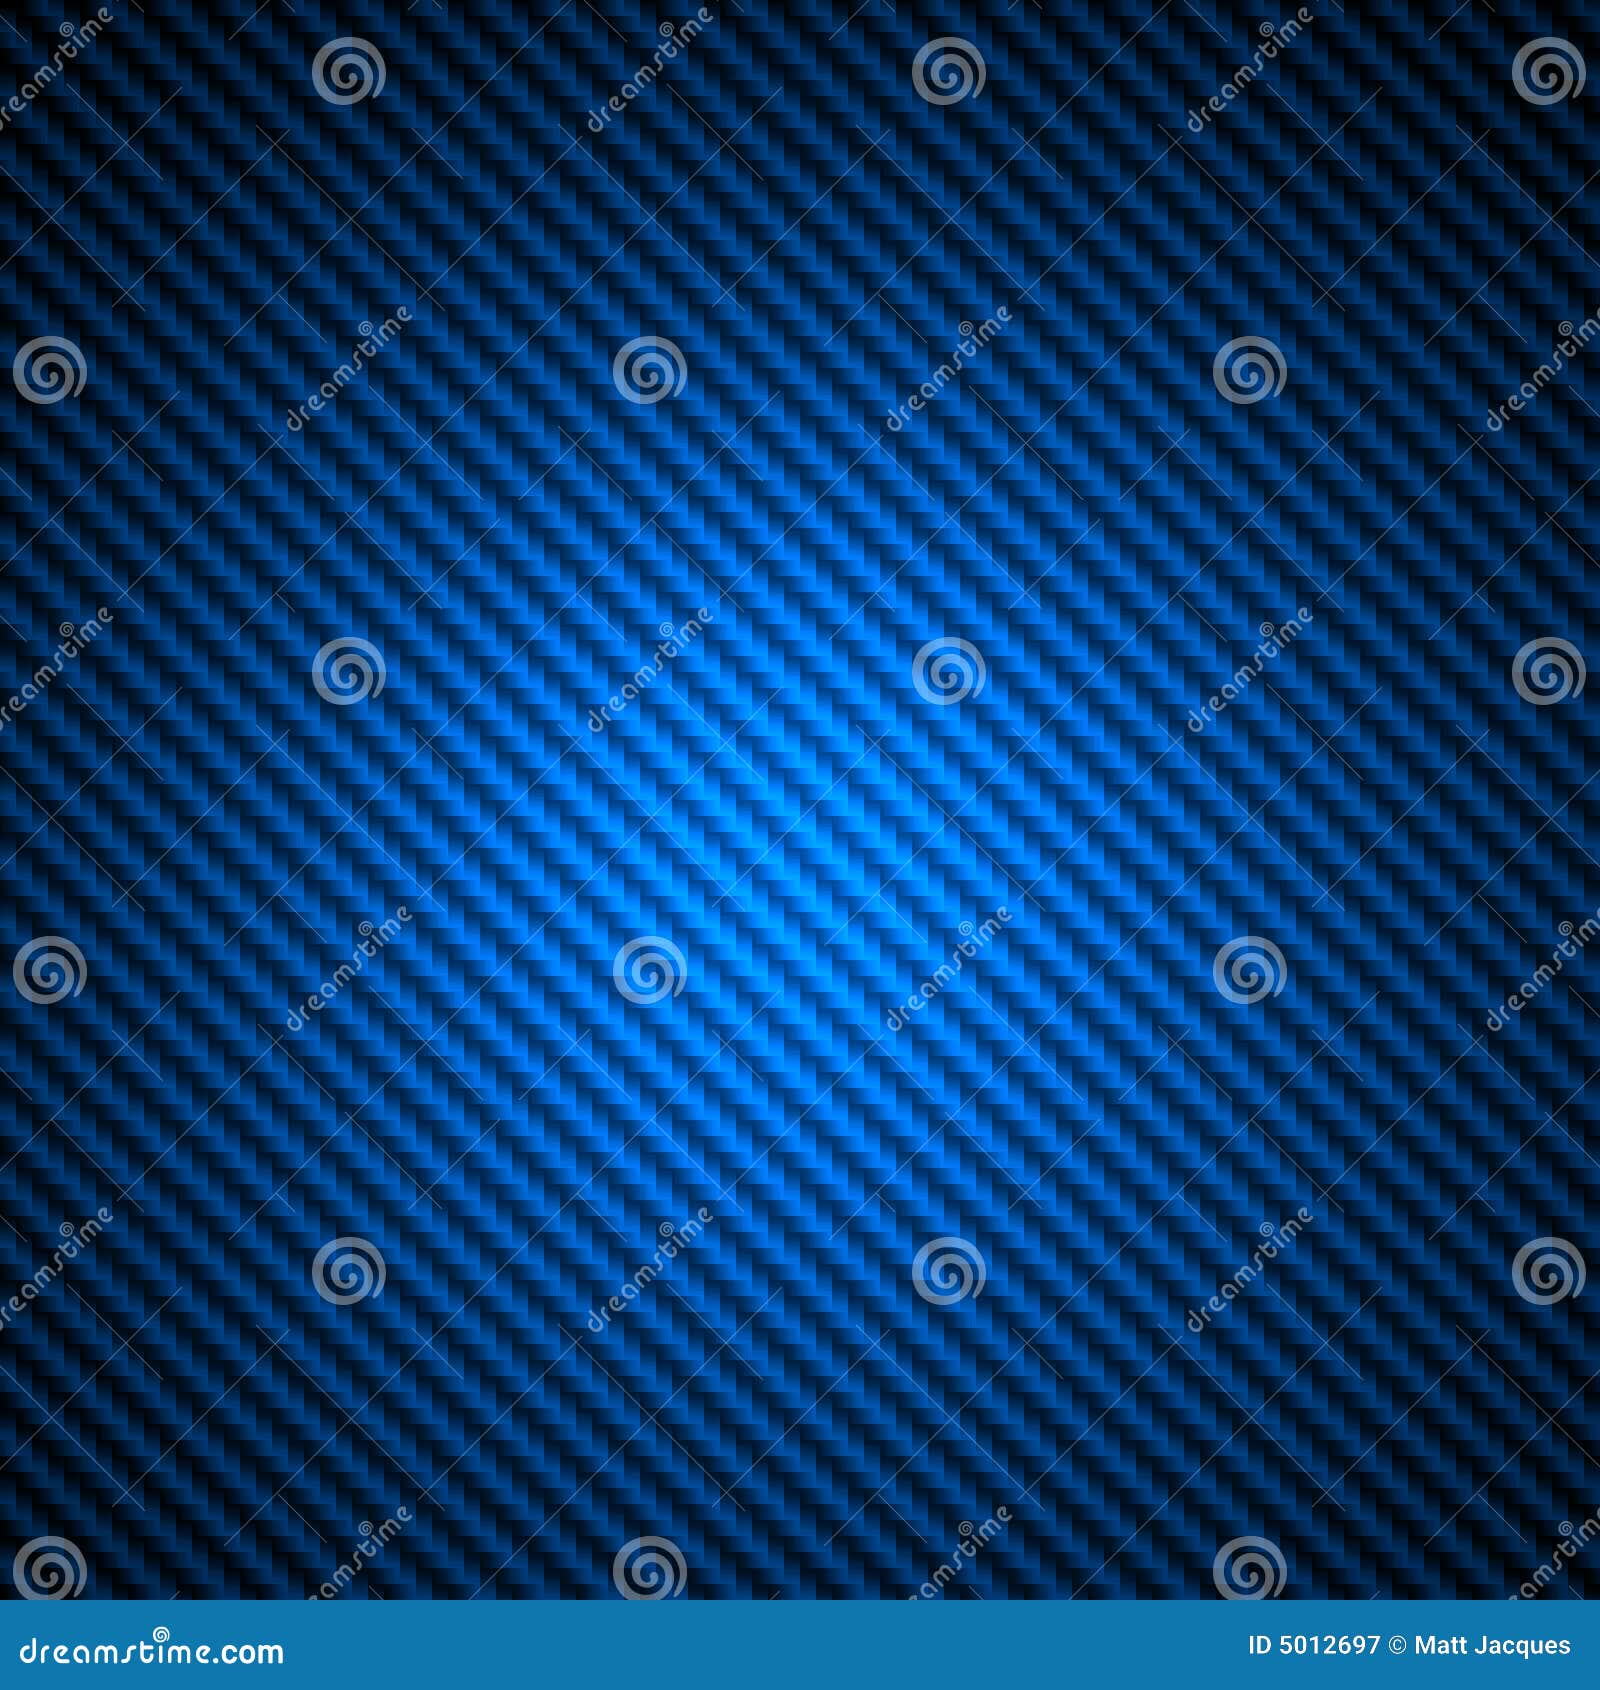 blue carbon fiber texture background